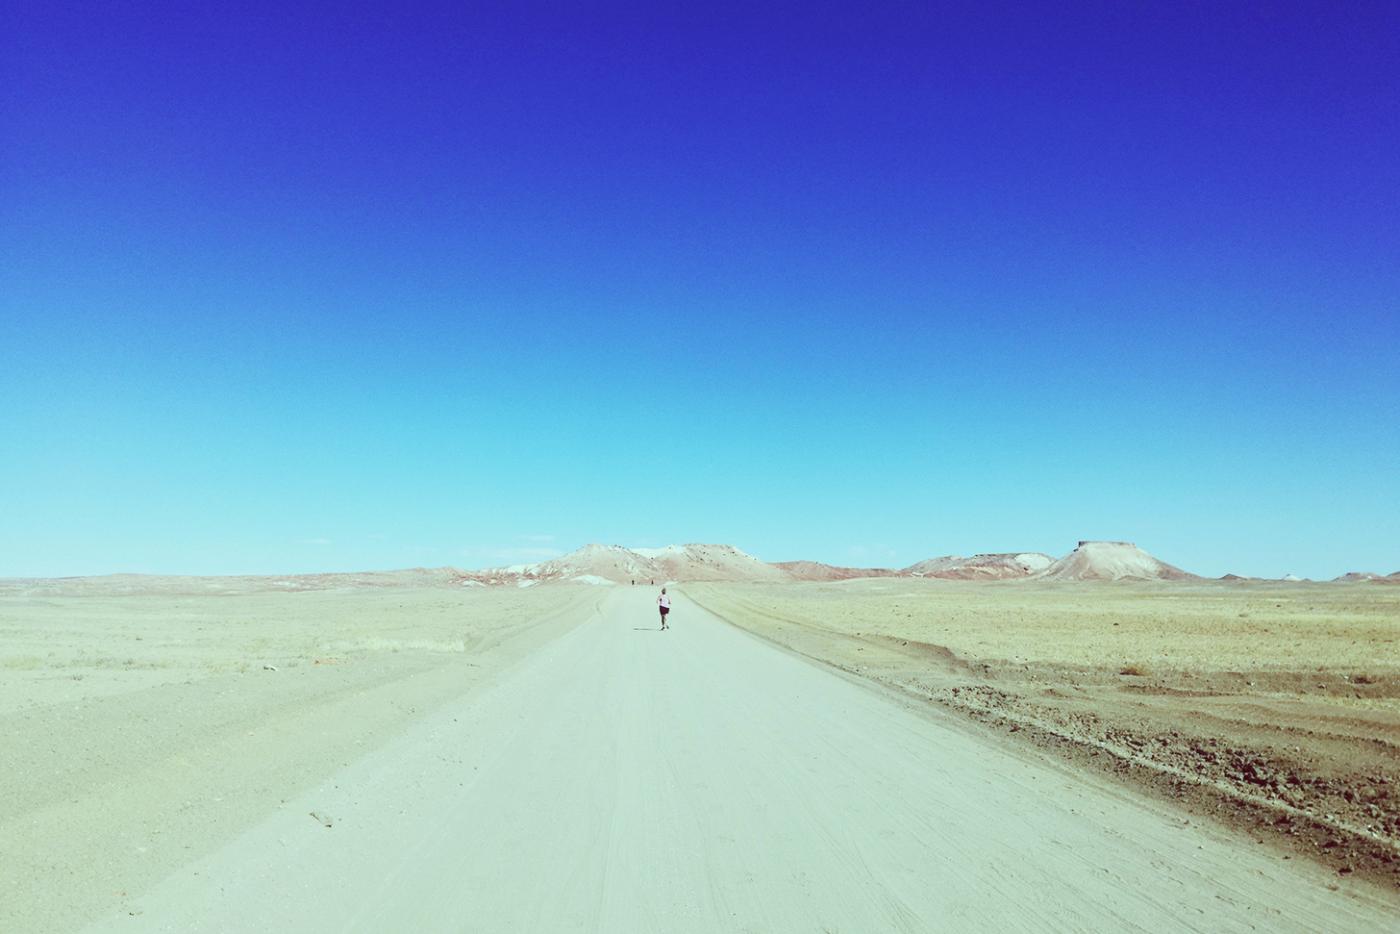 What I Learned Running Across the Desert